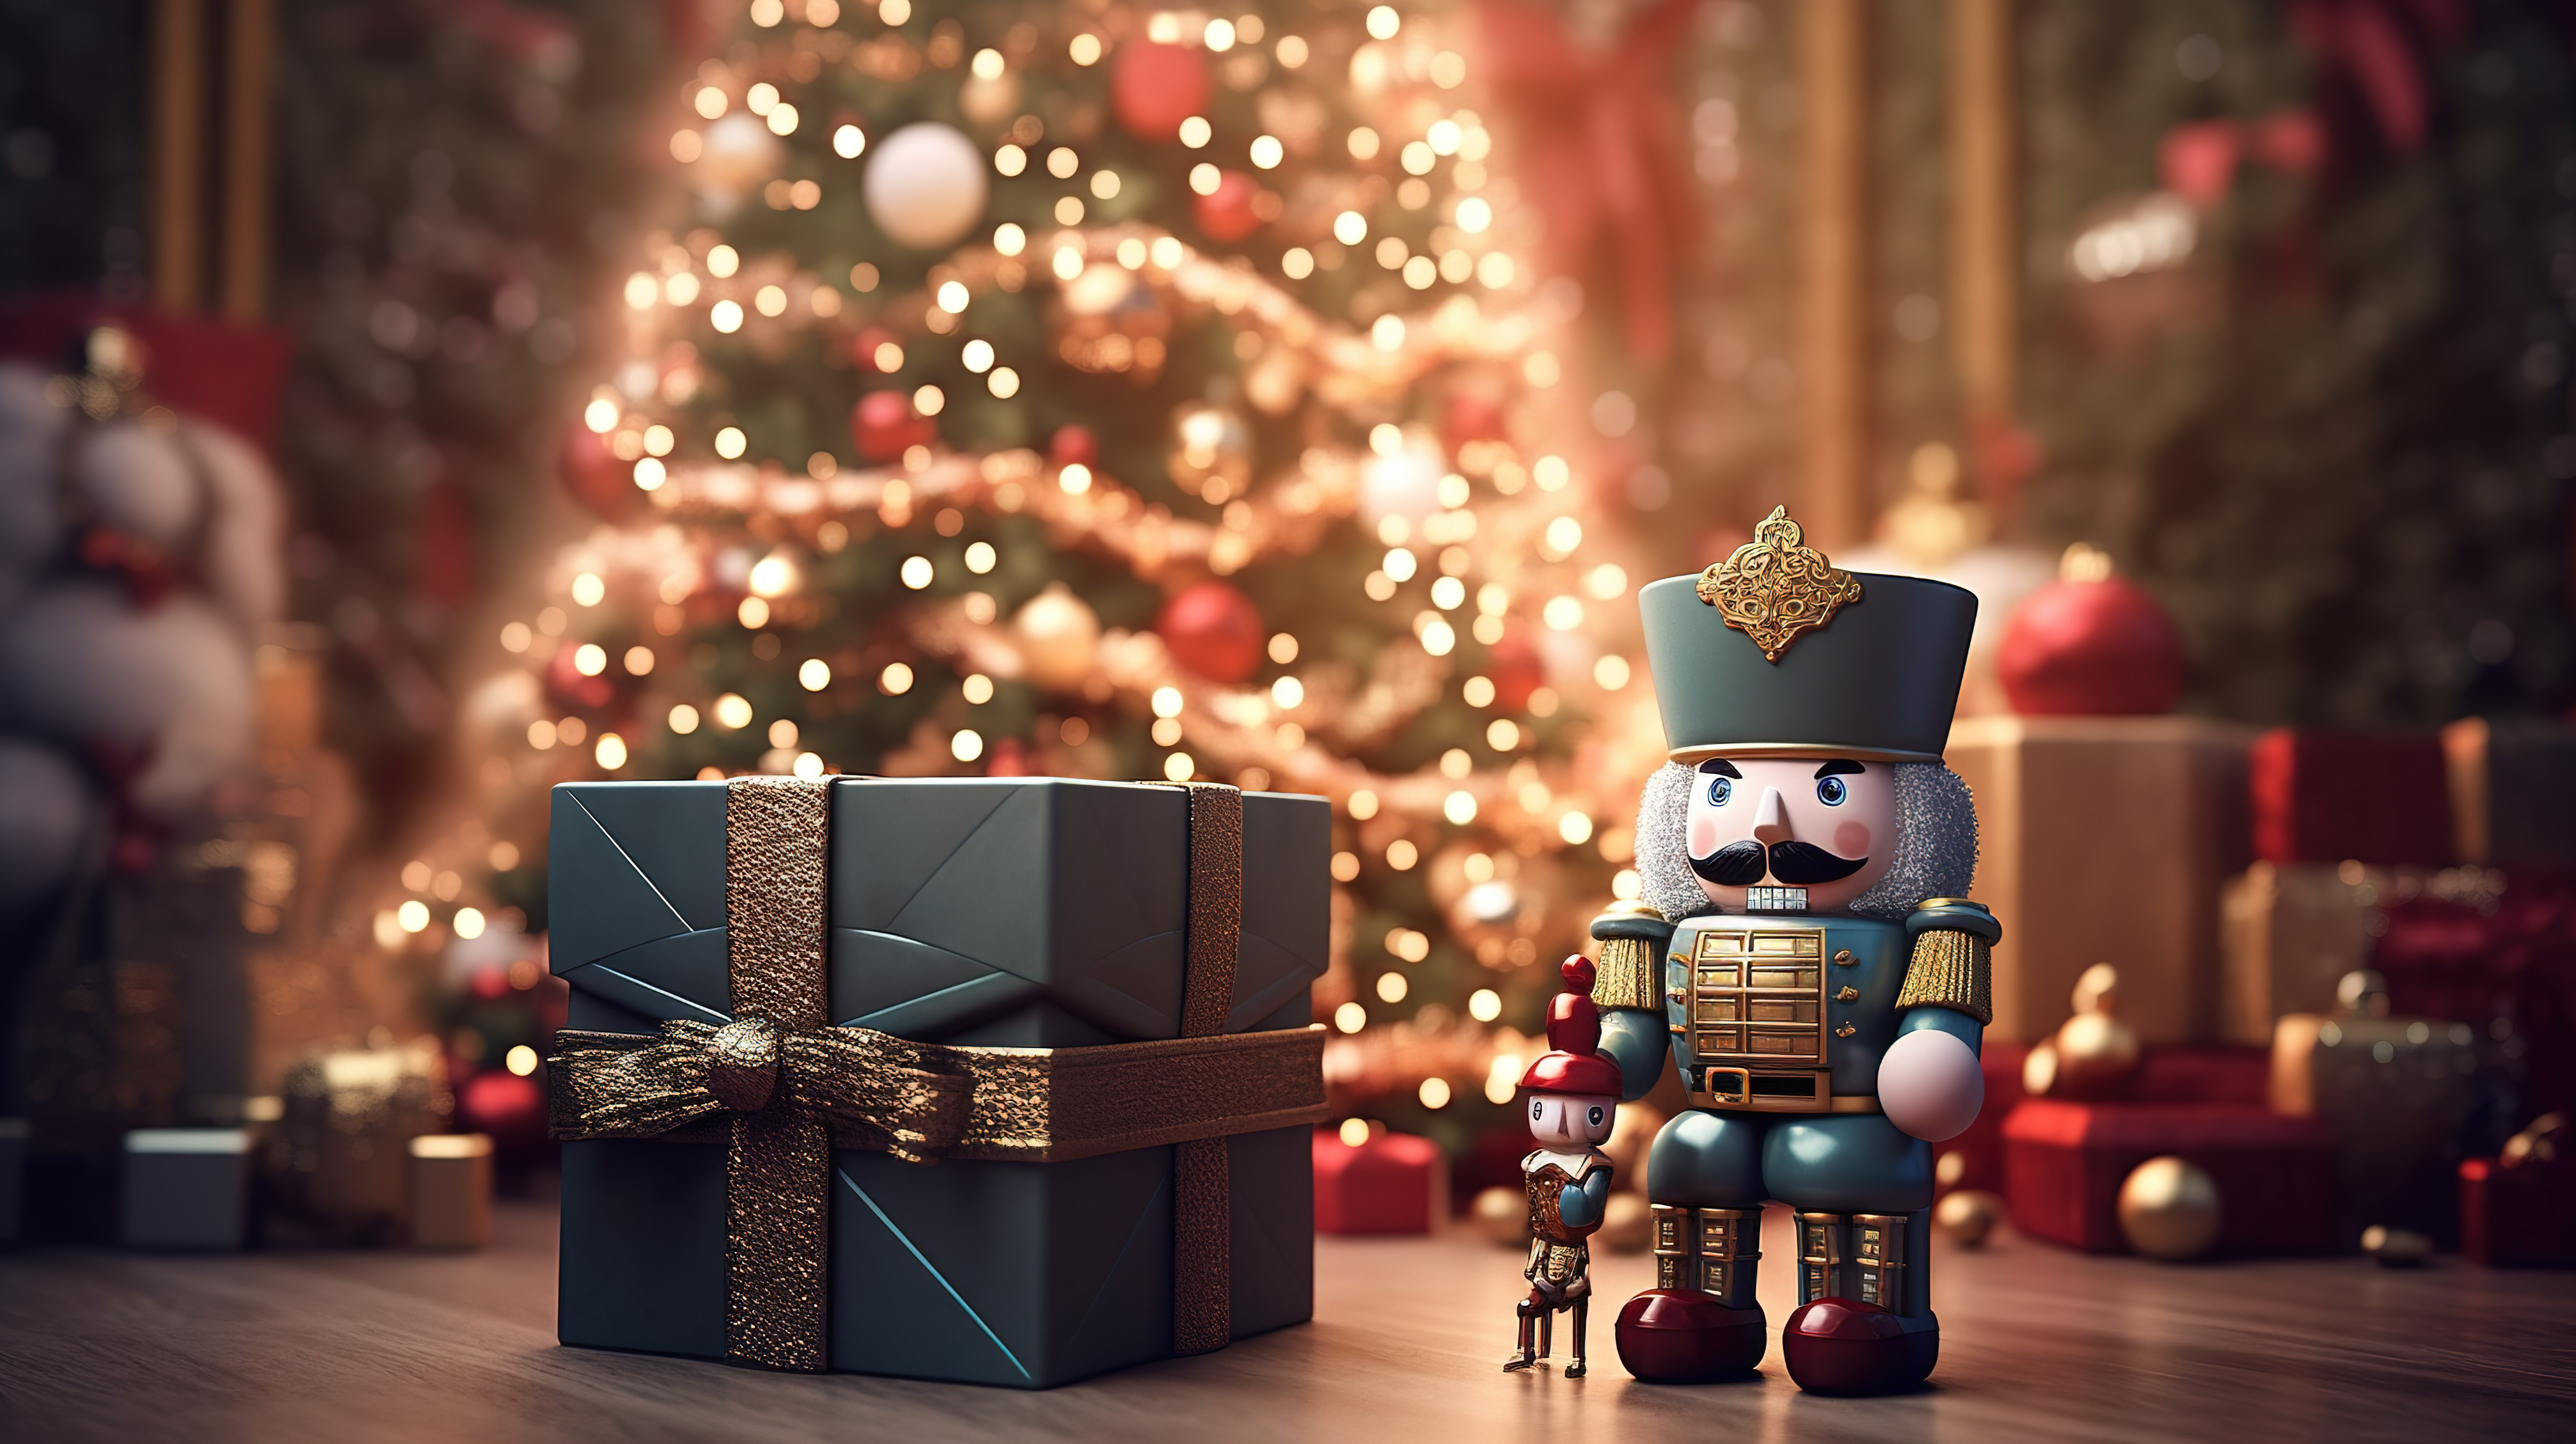 胡桃夹子和圣诞树在大礼品盒中的 3D 插图图片